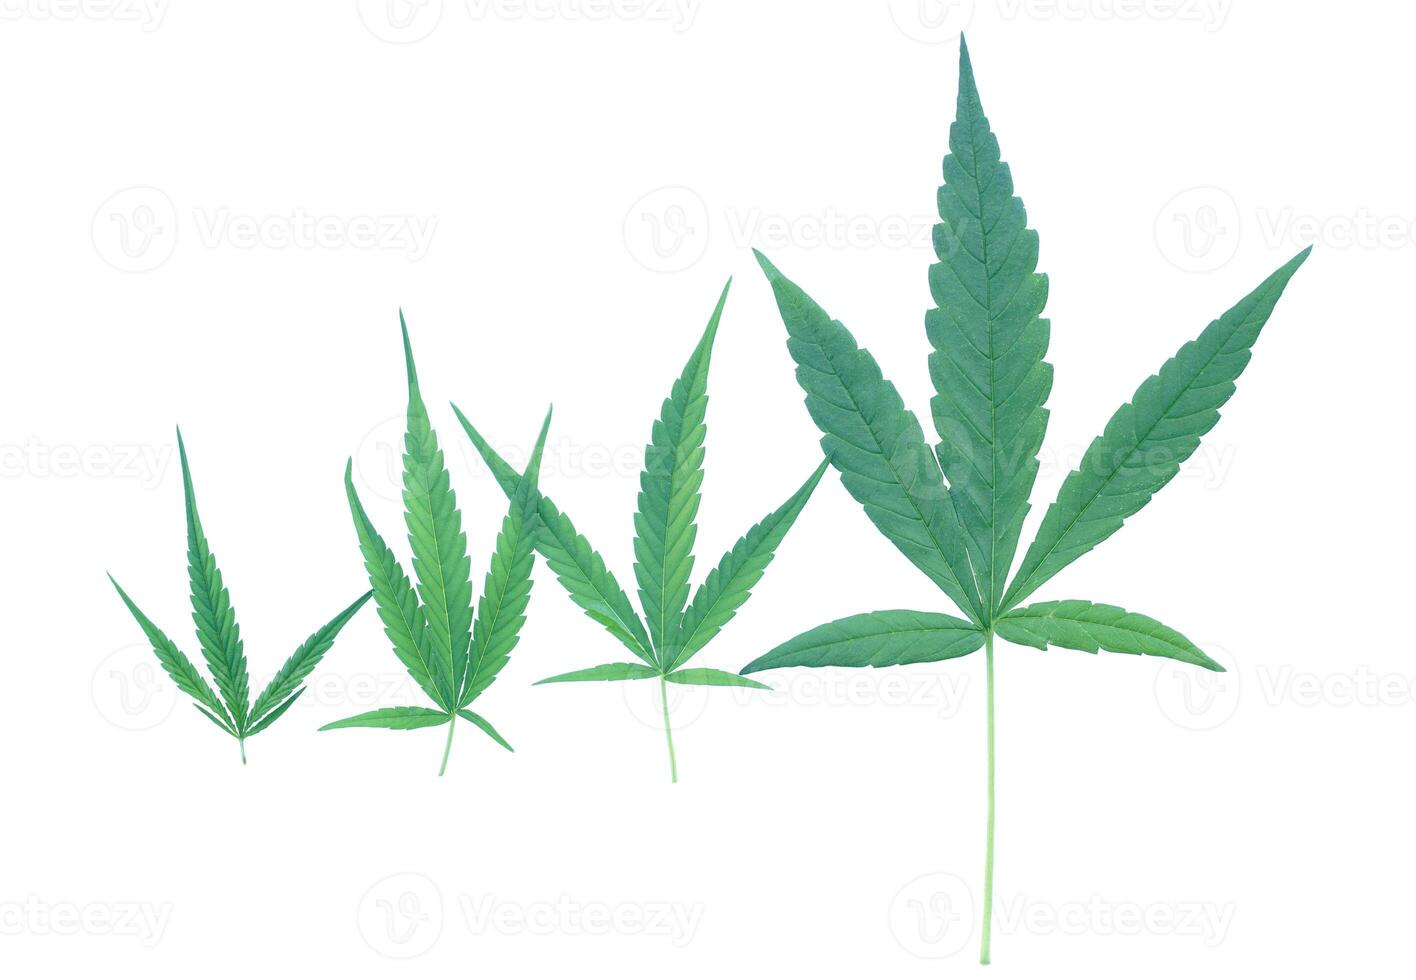 isolado maconha folhas do 4 tamanhos em branco fundo. cannabis é agora usava Como uma recreativo ou medicinal medicamento. suave e seletivo foco. foto